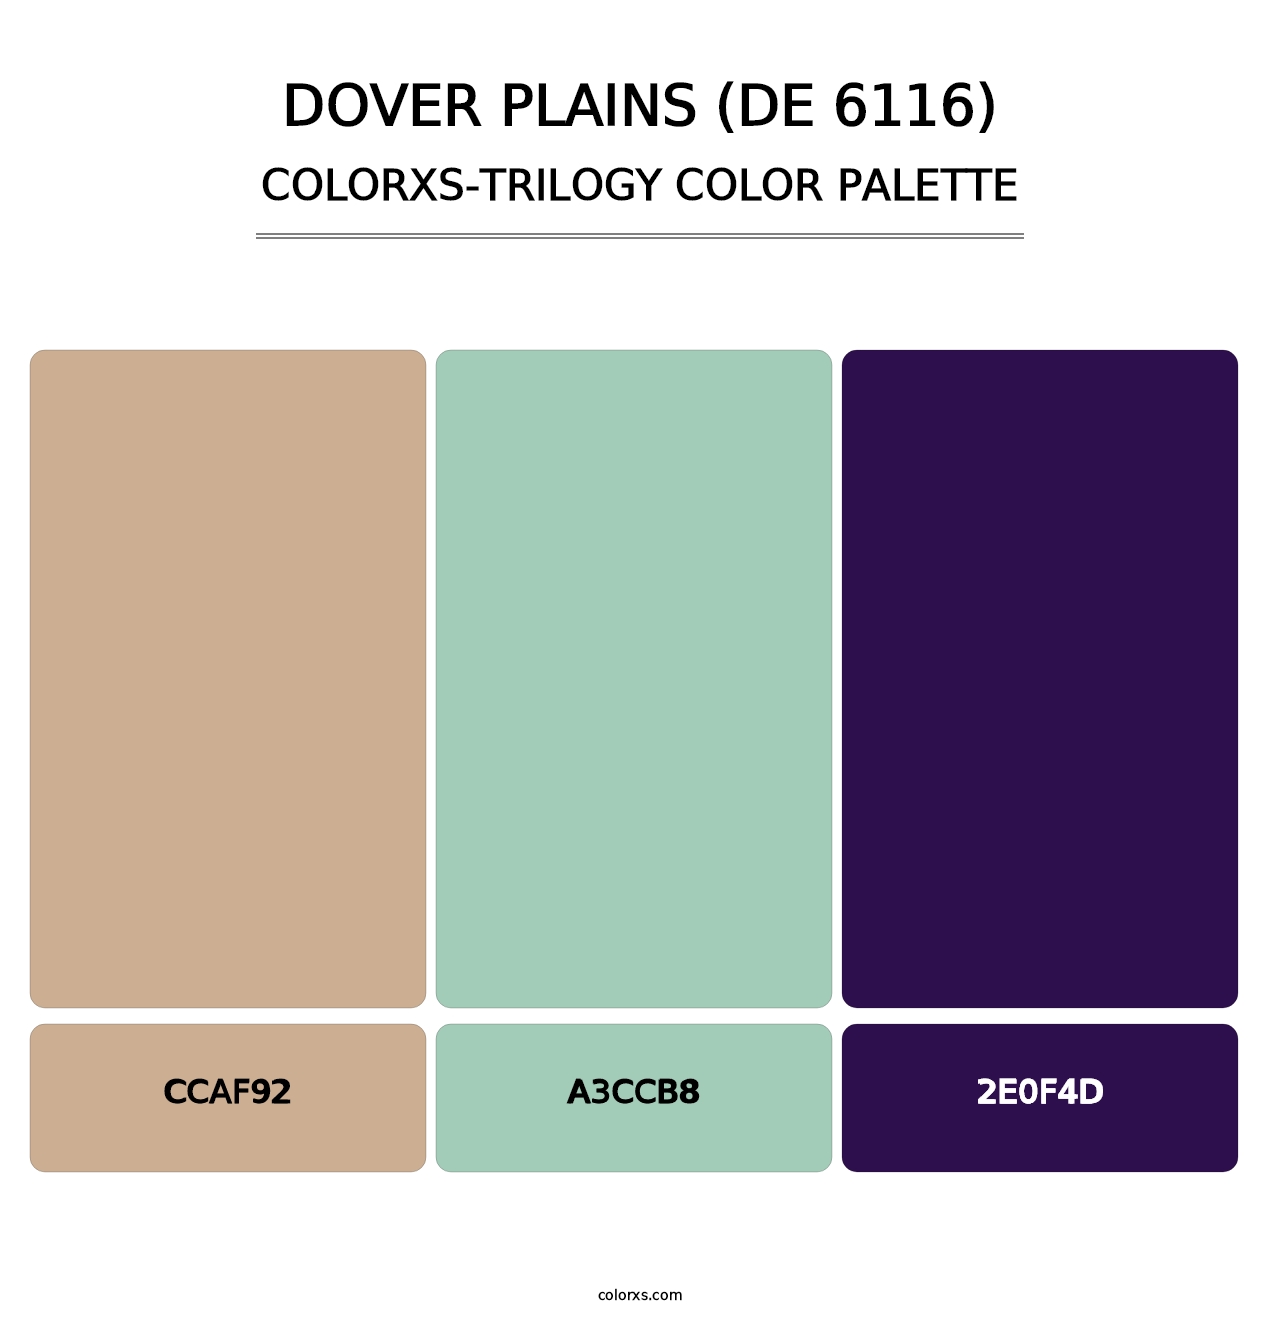 Dover Plains (DE 6116) - Colorxs Trilogy Palette